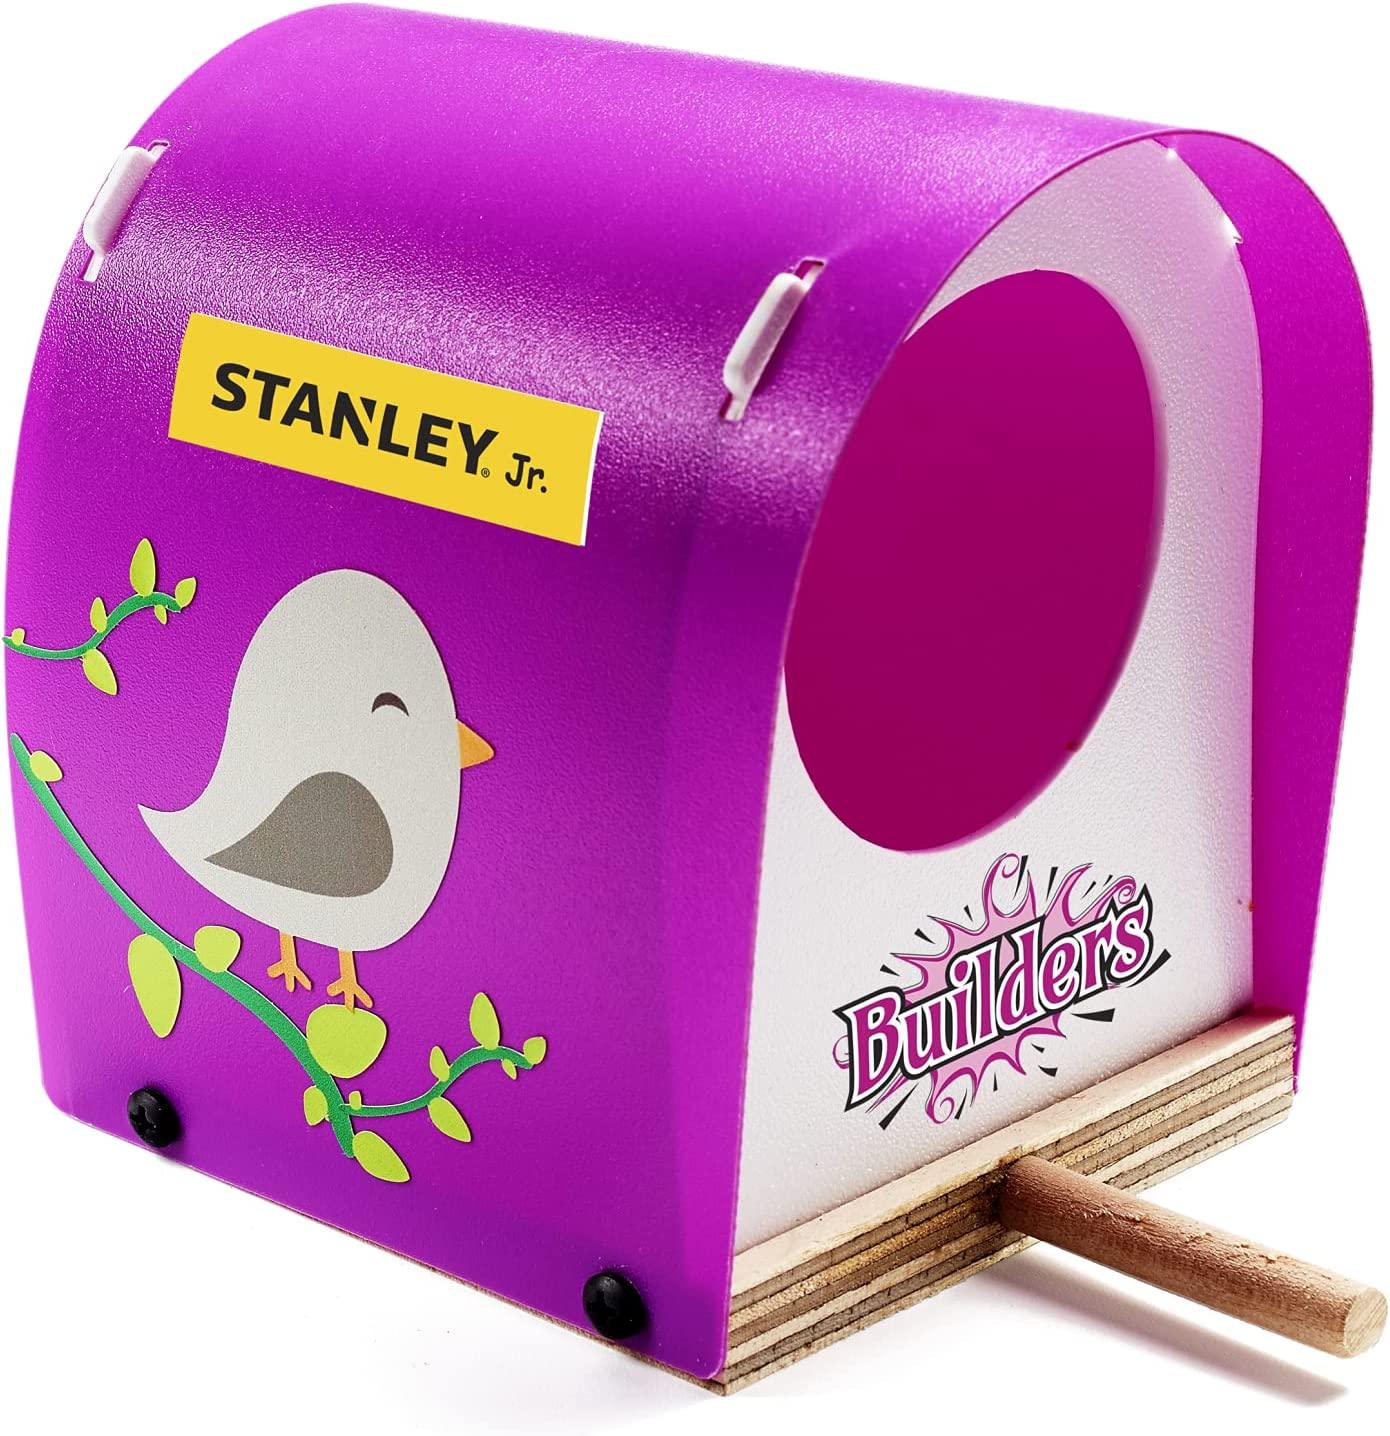 Stanley Jr .: Mini Vugelbunn Konstruktioun Kit